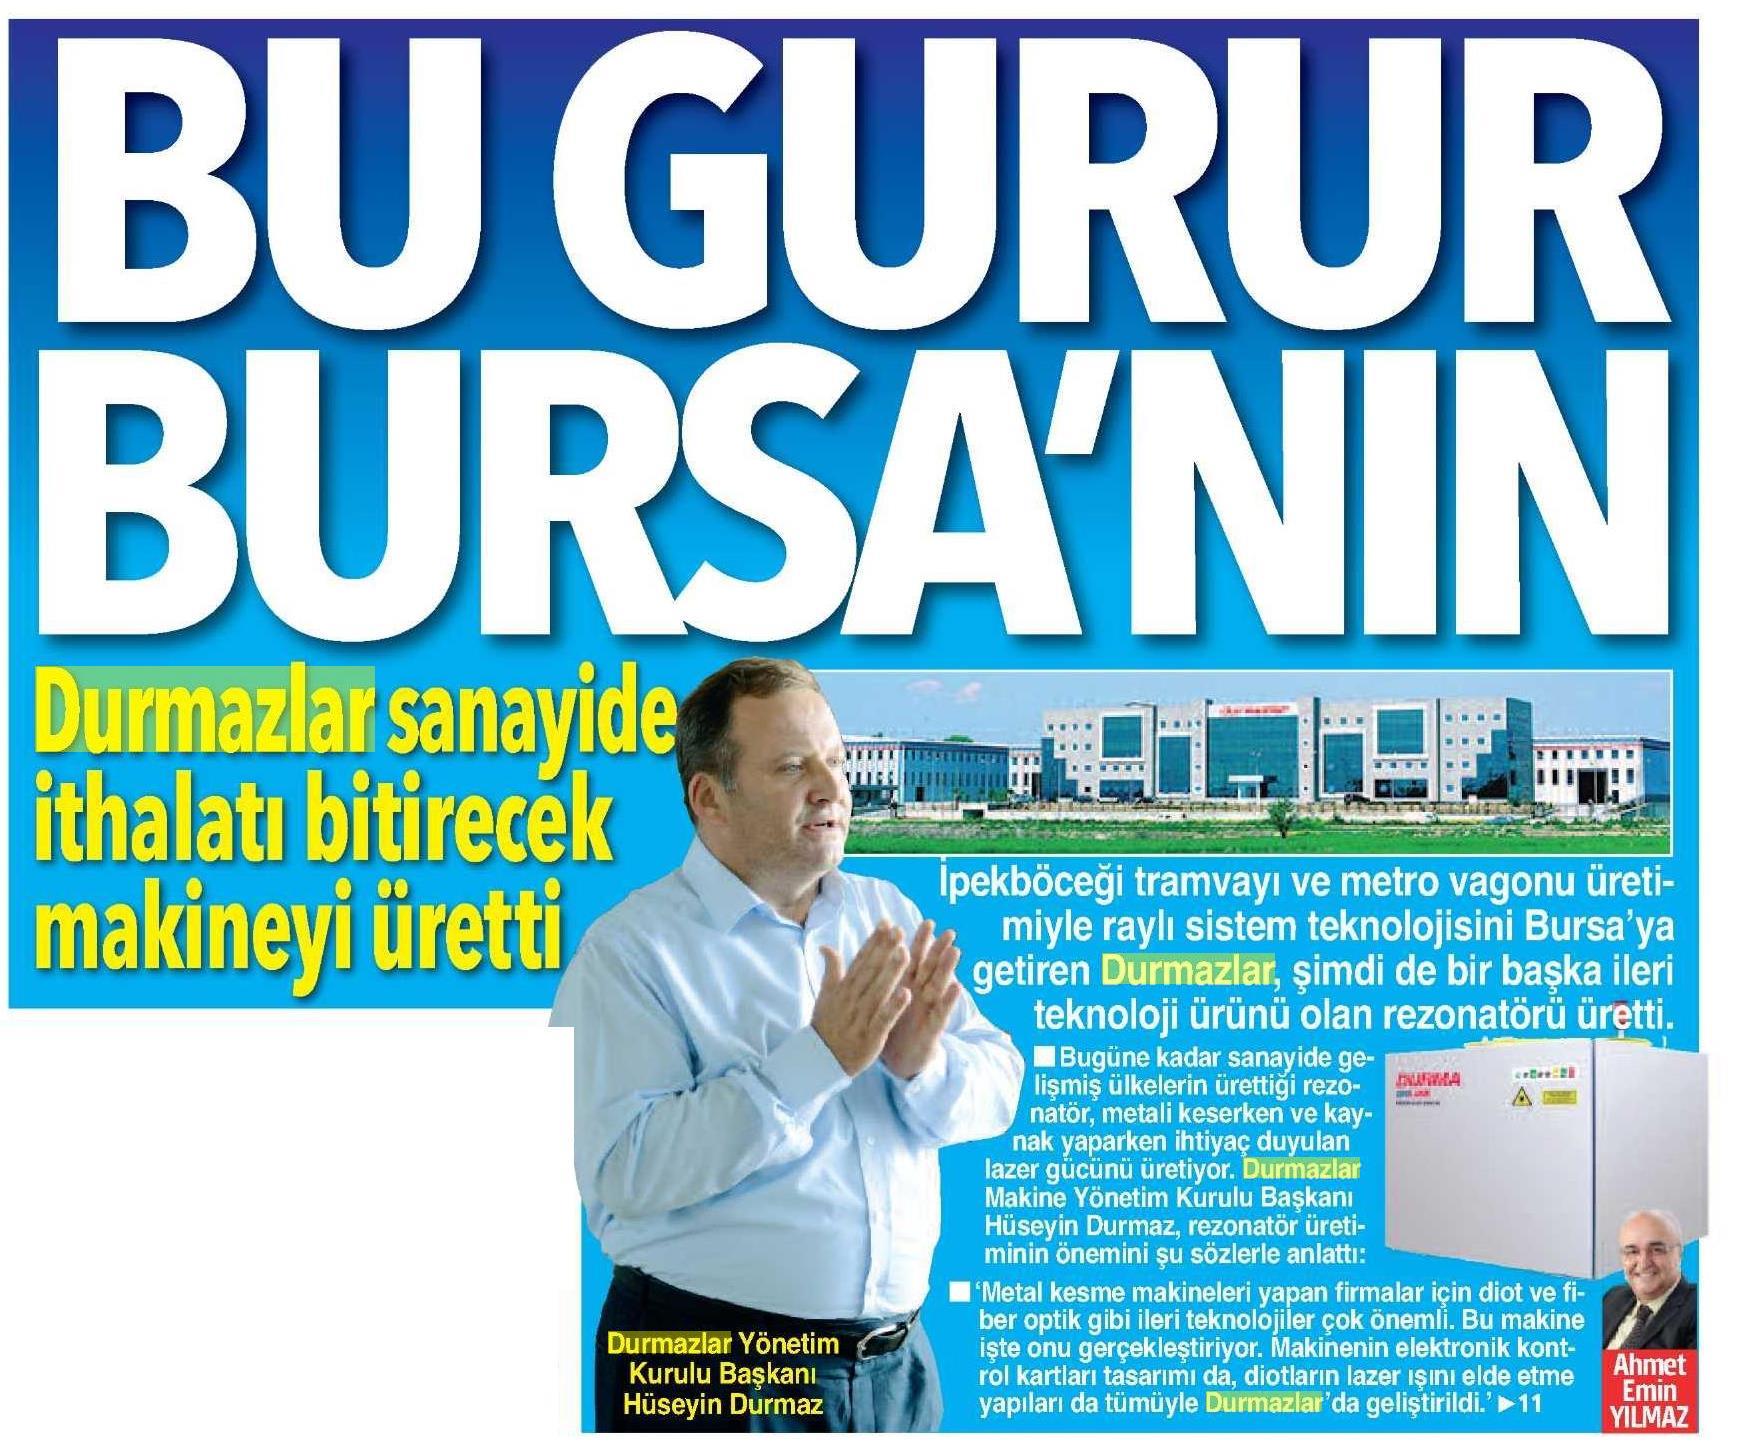 Dieser Stolz von Bursa